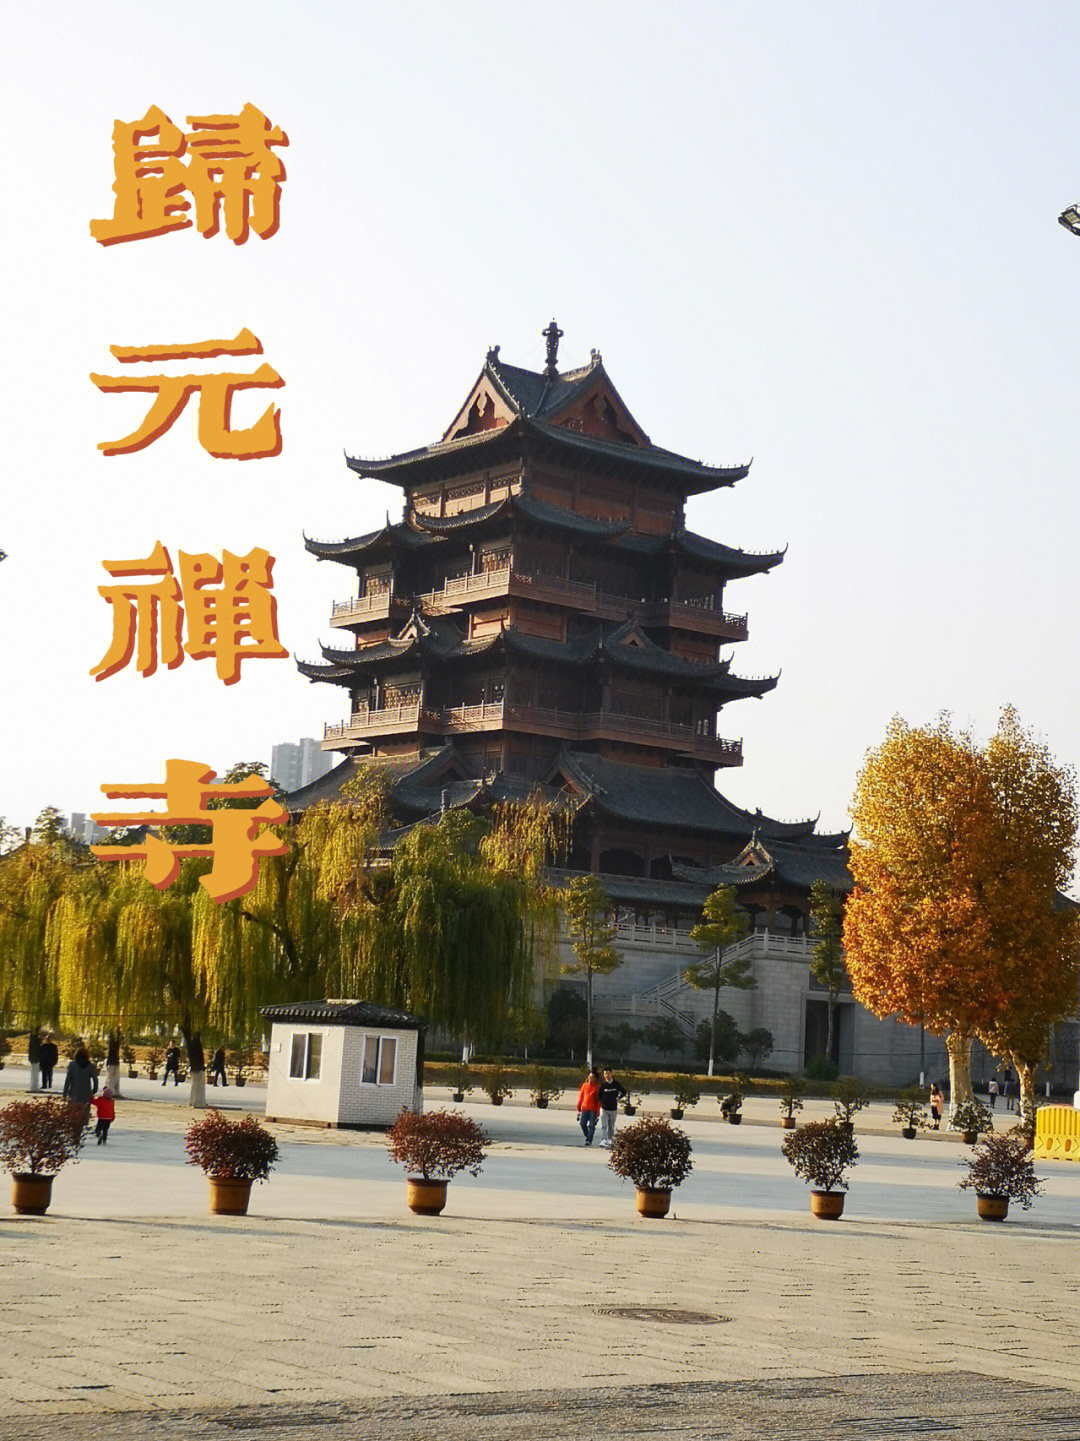 75武汉市闹市区最大的佛教寺院~归元禅寺,首先是国家aaaa级景区,素